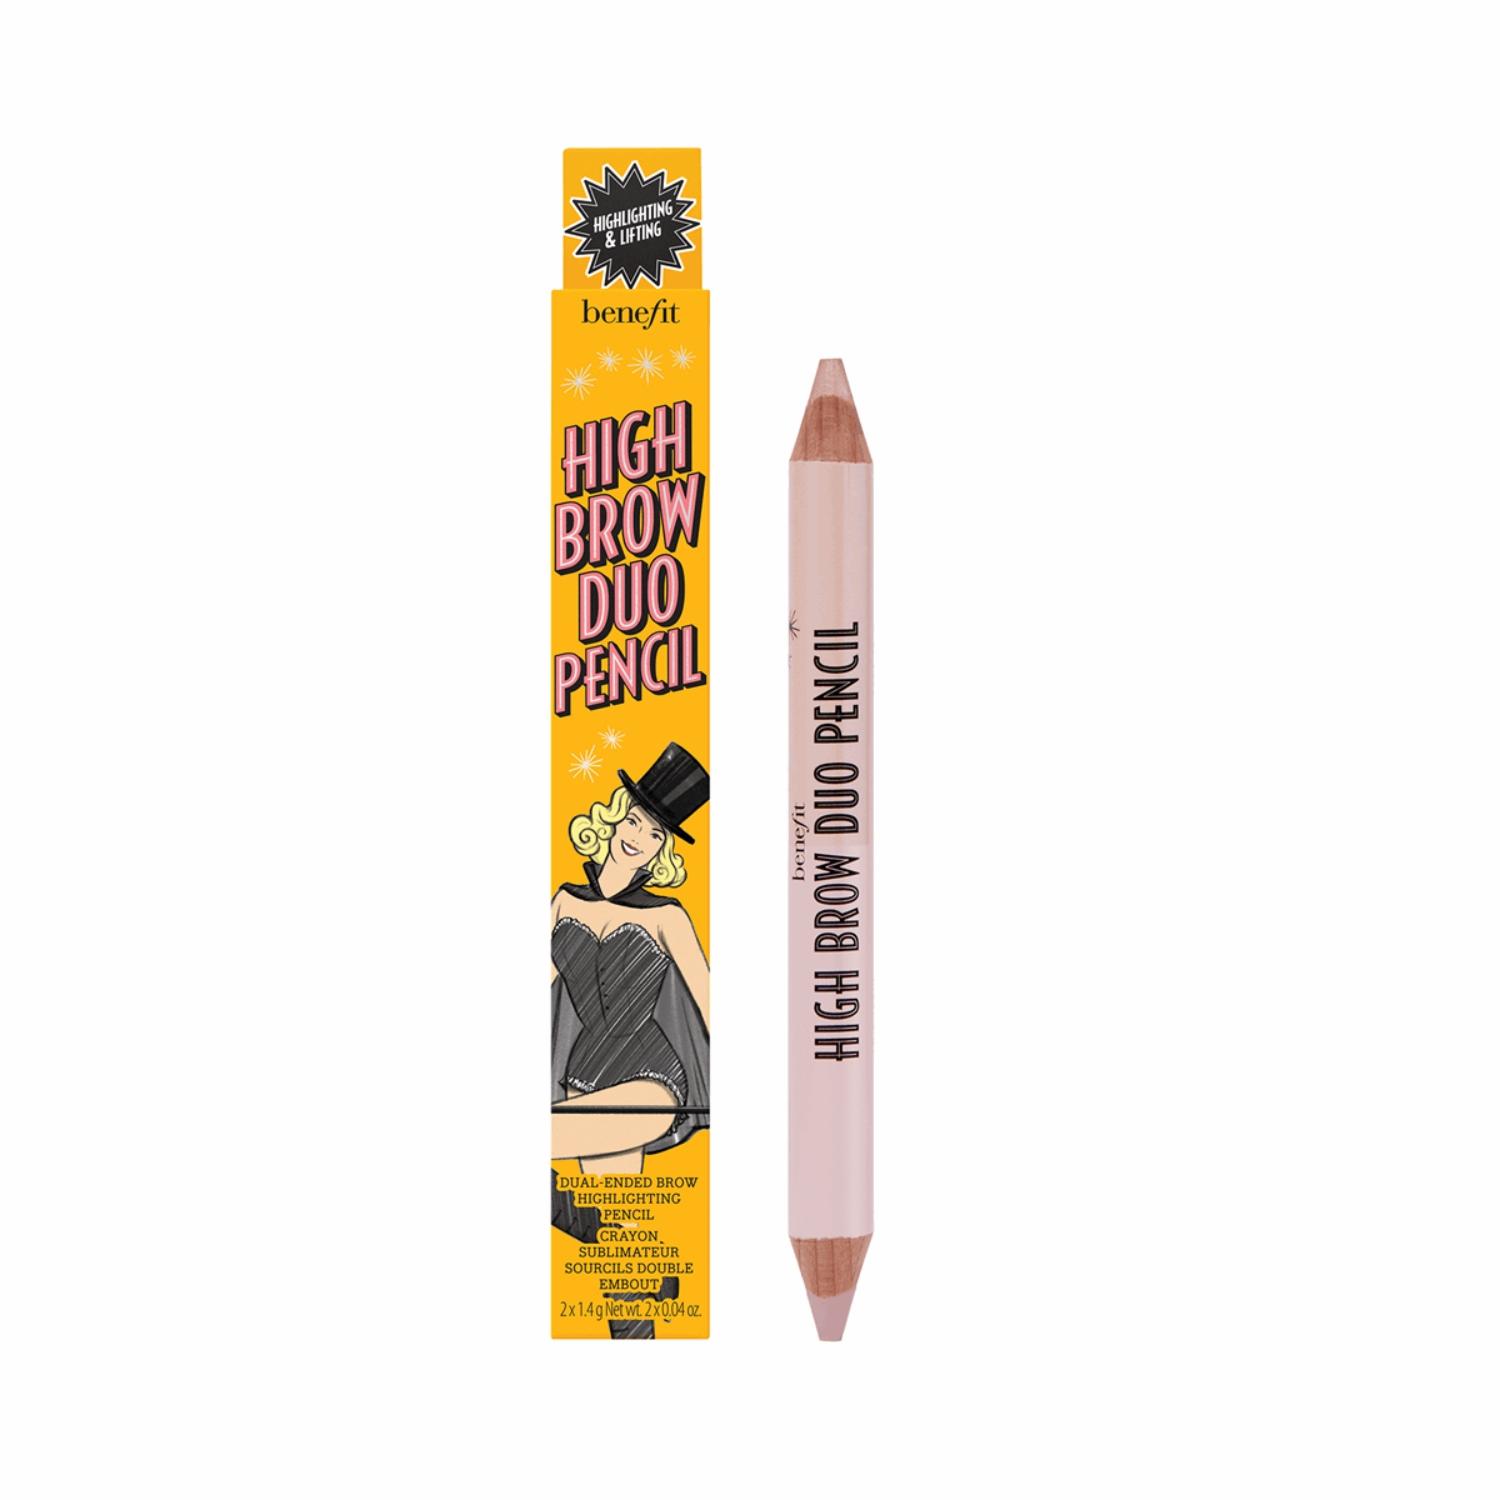 benefit cosmetics high brow duo pencil set - (2pcs)